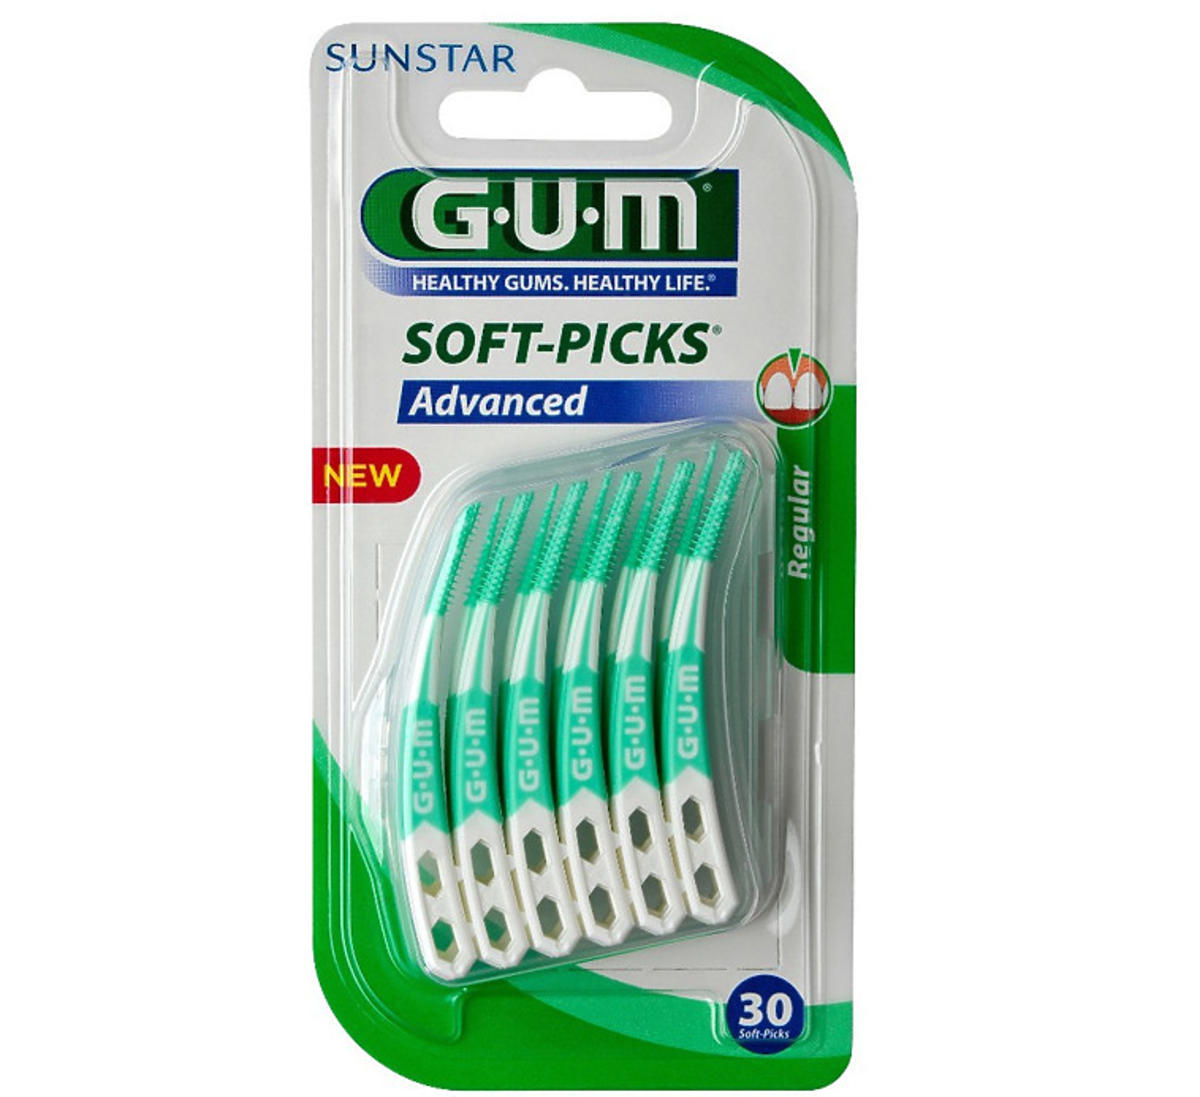 SUNSTAR GUM Soft-Picks Advanced szczoteczki do przestrzeni międzyzębowych, 30 sztuk